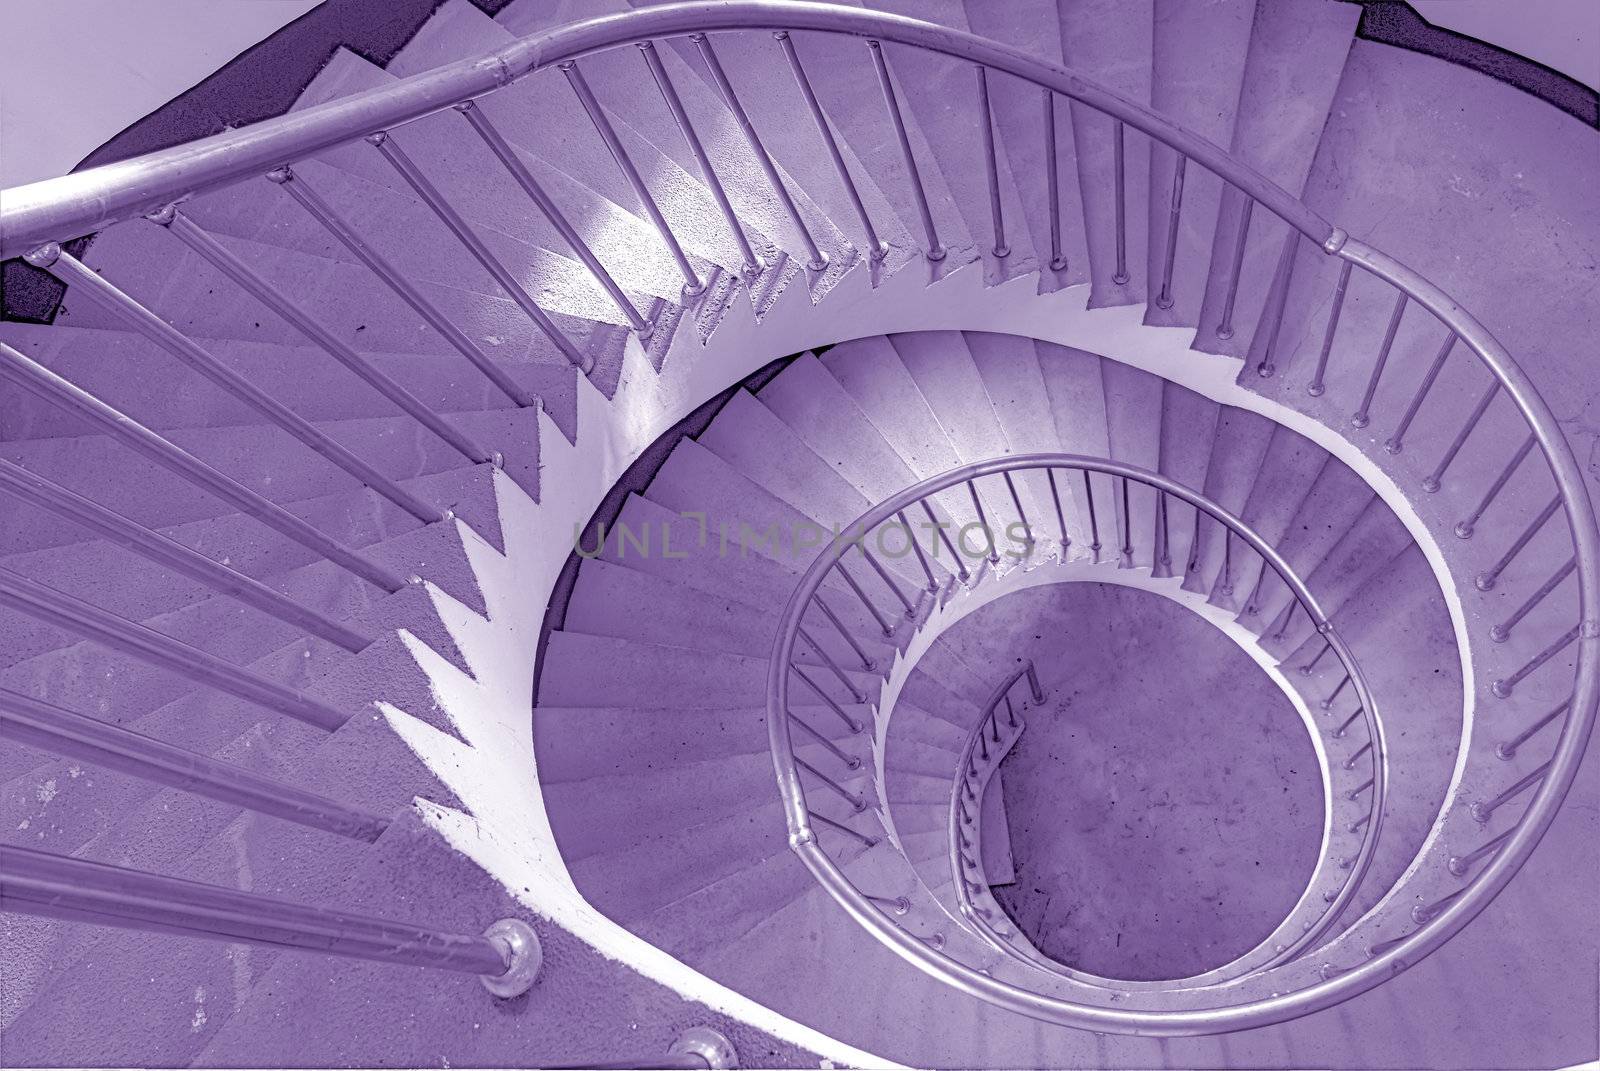 spiraling stairs by elwynn